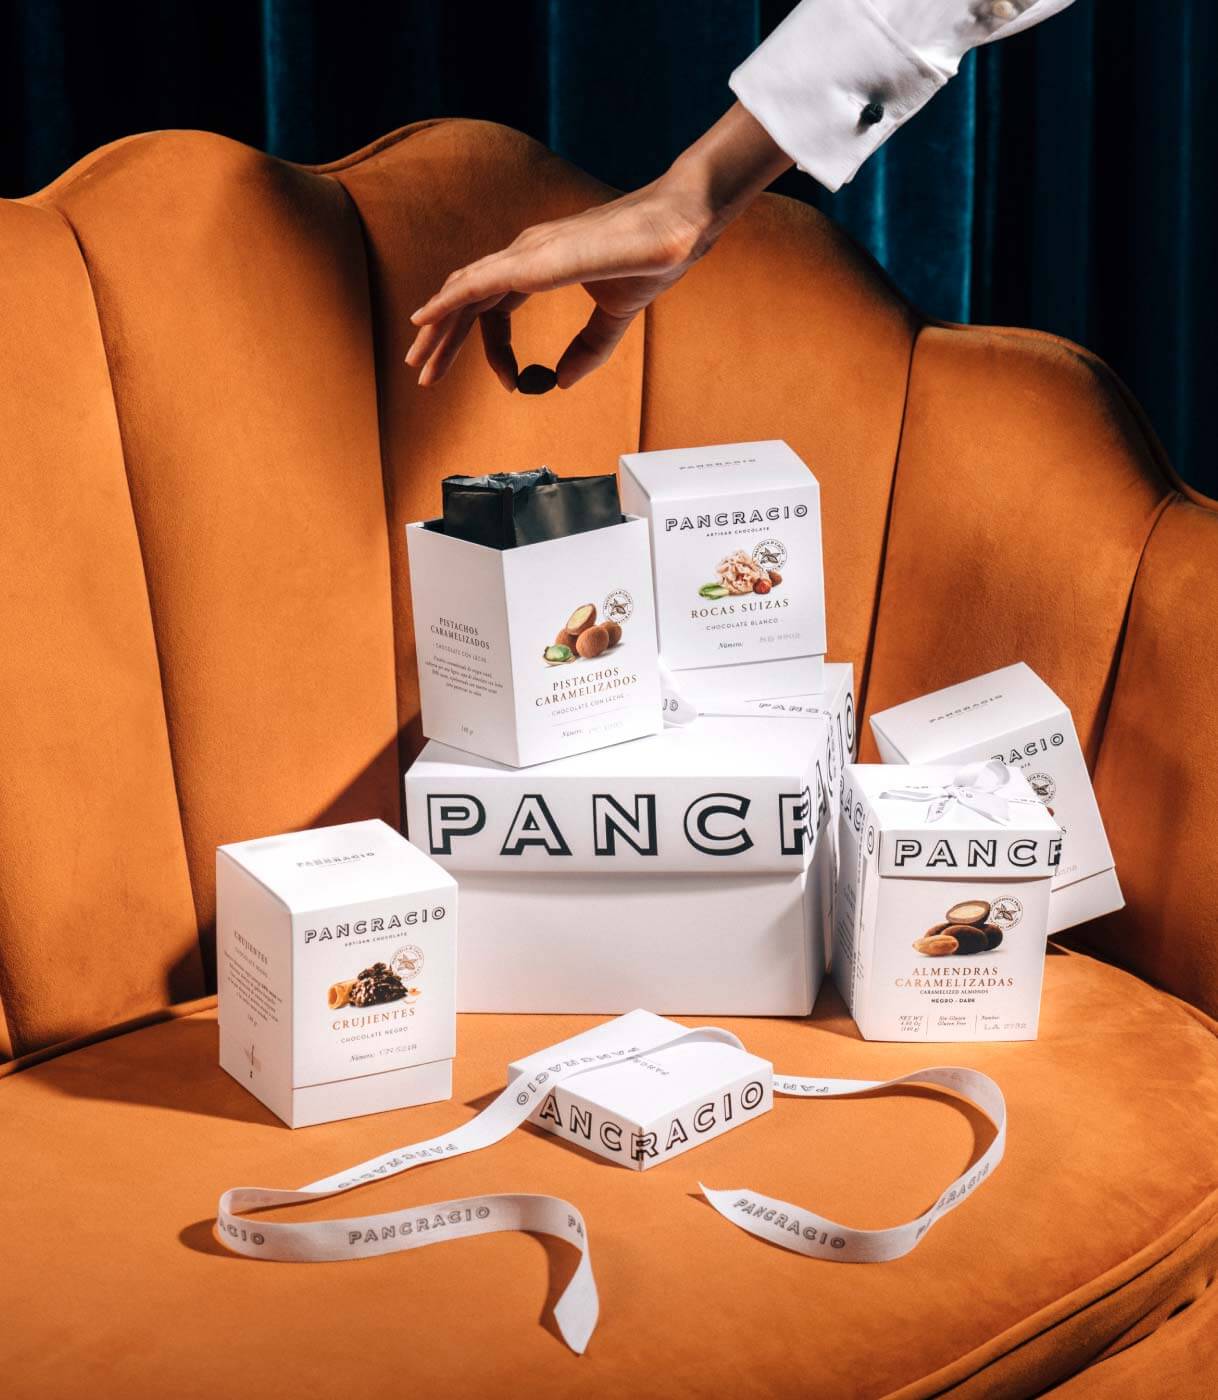 Fotografía publicitaria del nuevo packaging de Chocolates Pancracio por Agencia Kids